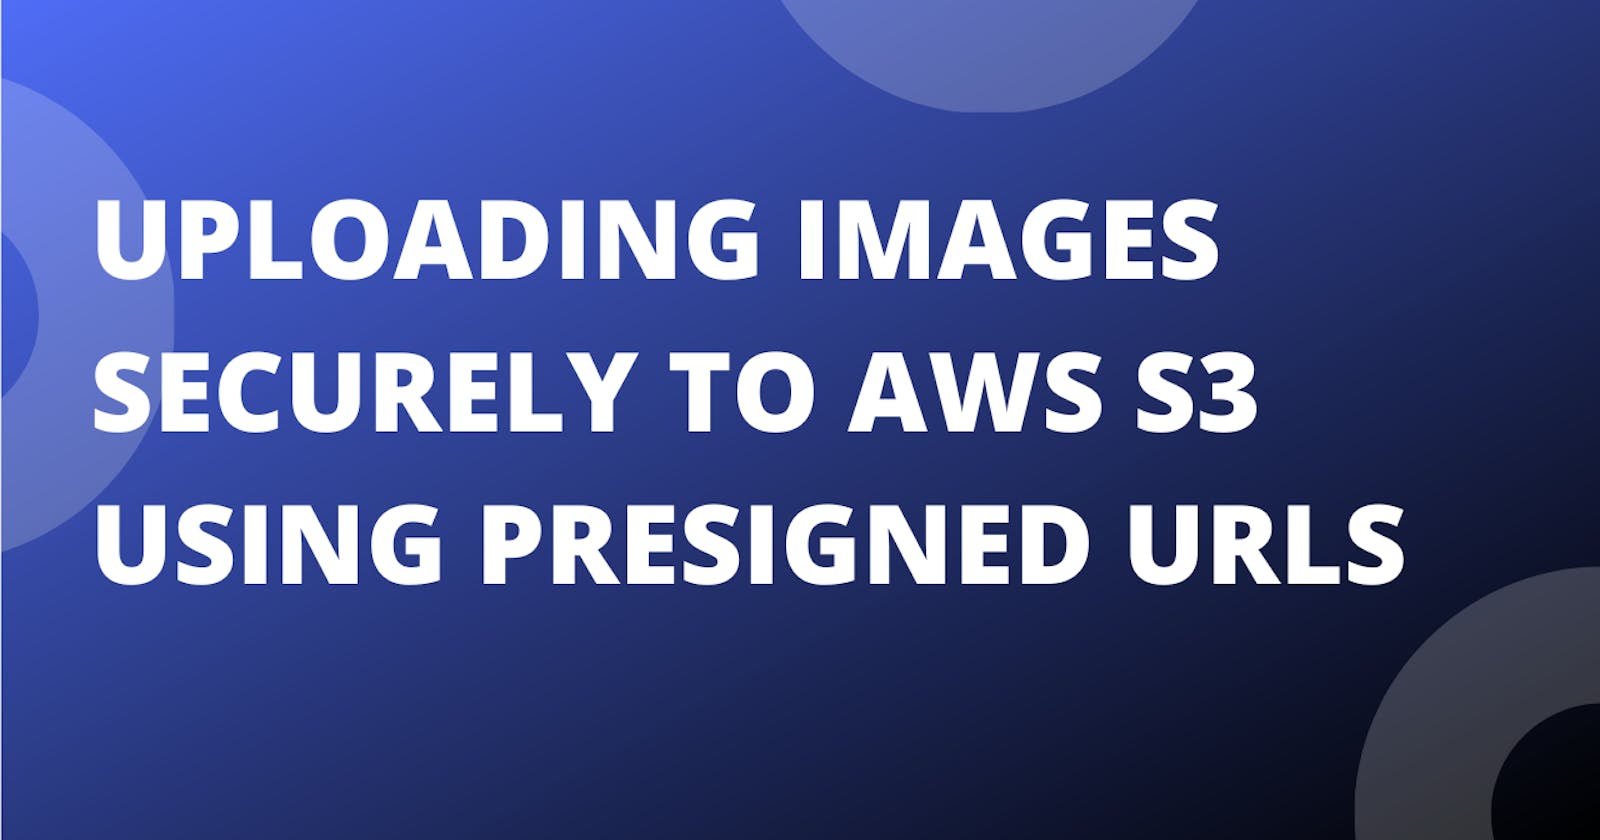 Uploading Images Securely to AWS S3 Using Presigned URLs